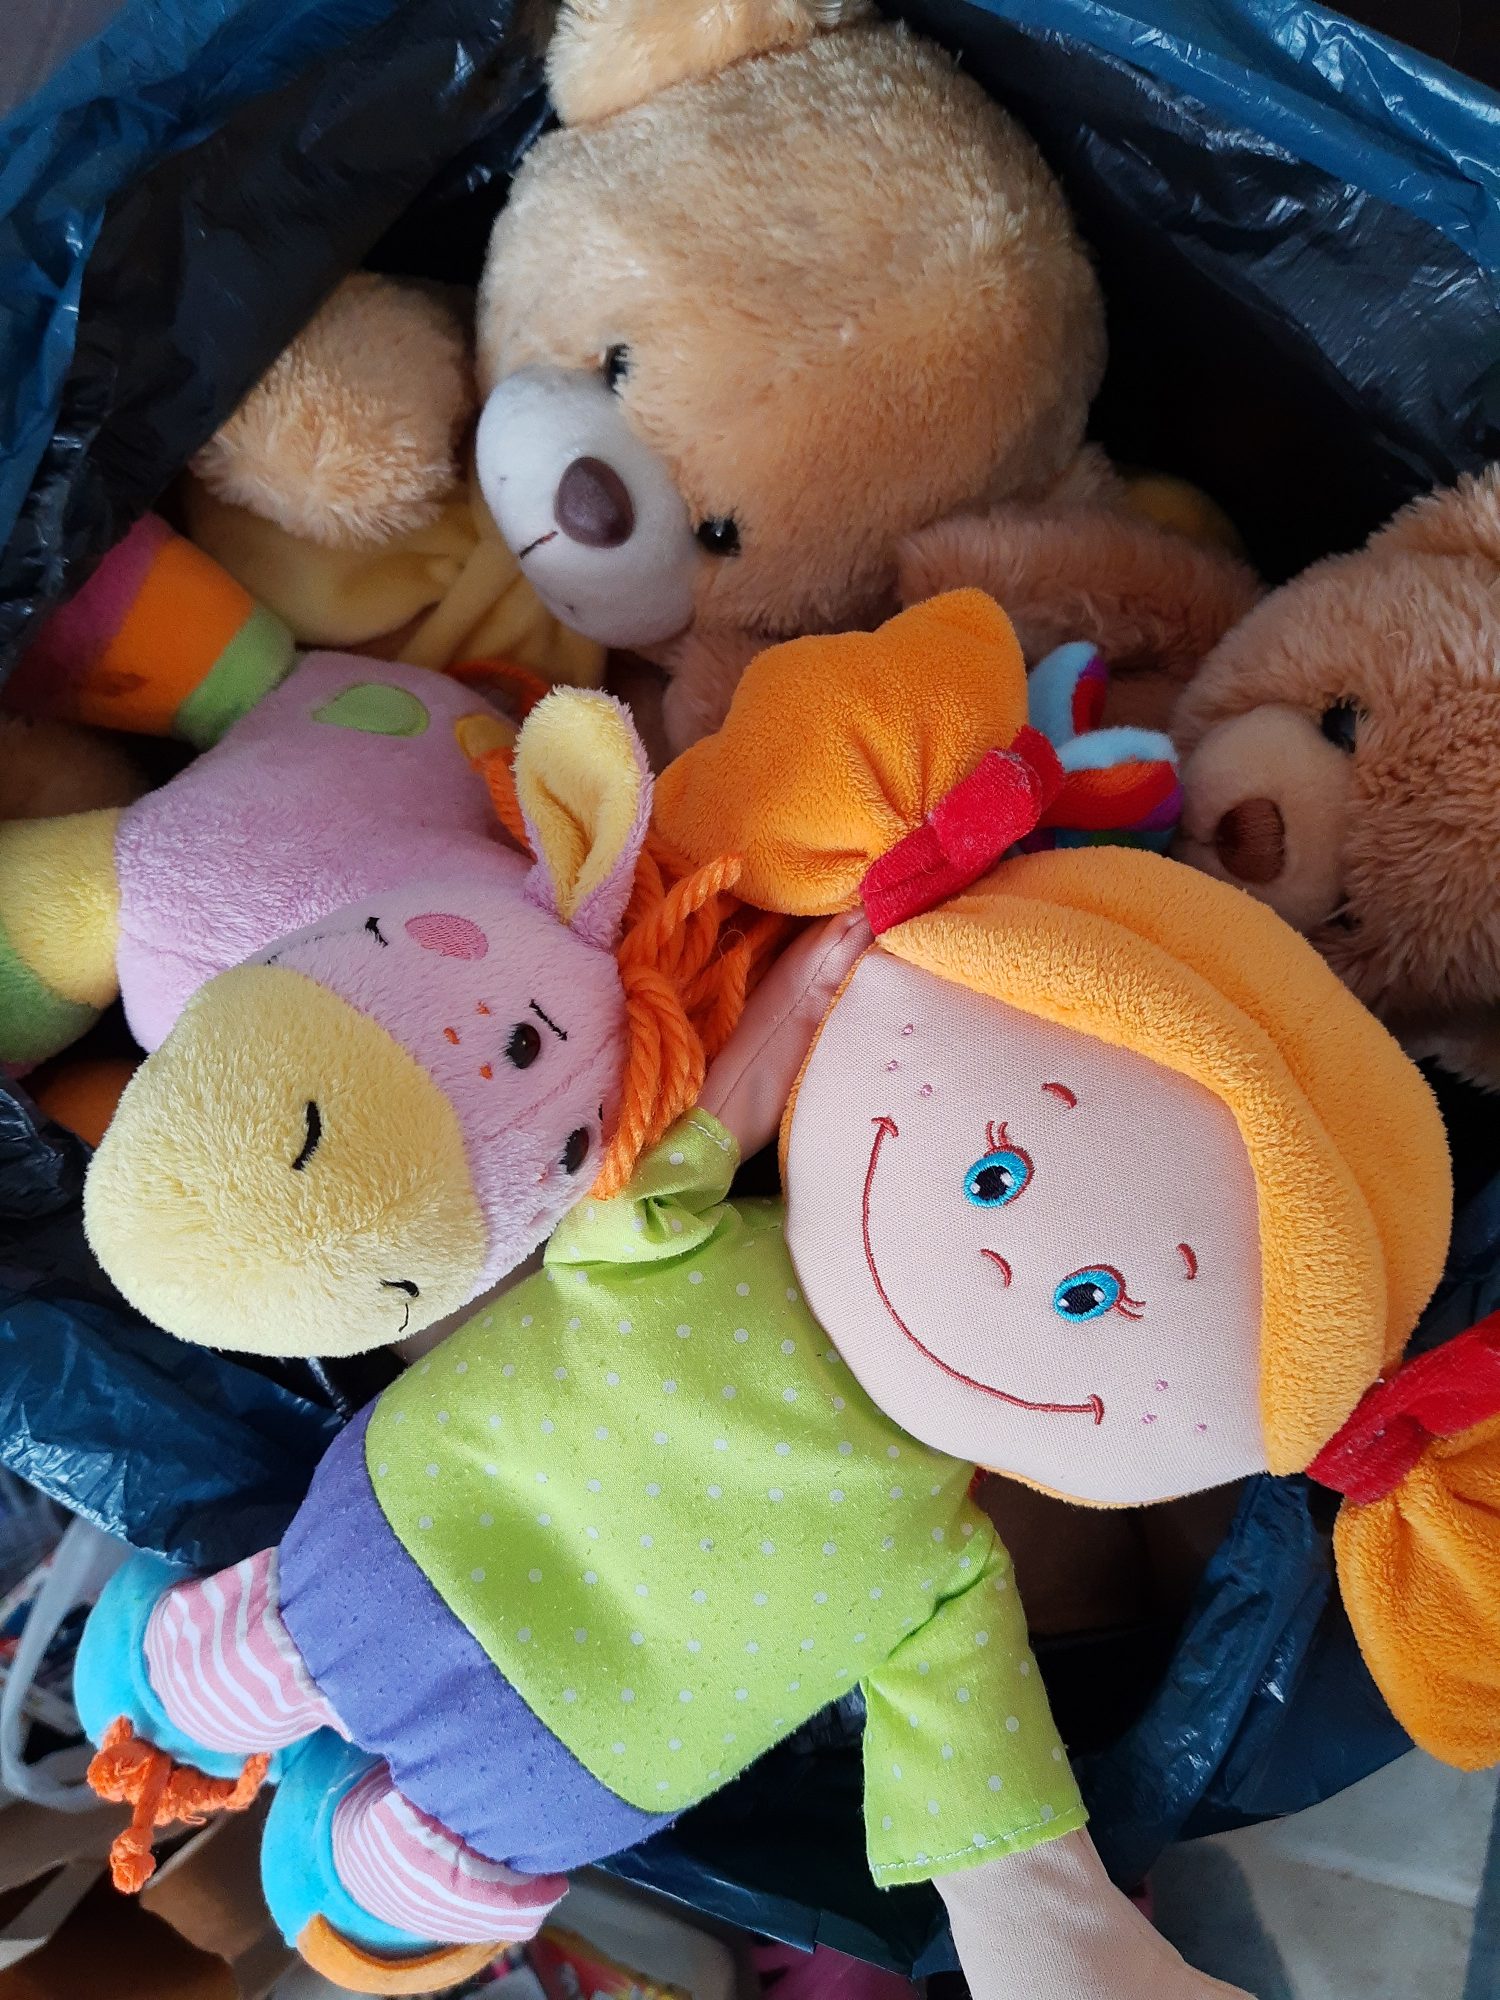 Pluszaki dla dzieci. Wśród nich: szmaciana lalka z pomarańczowymi włosami upiętymi w dwa kucyki. Obok pluszowy osiołek koloru różowego oraz dwa brązowe pluszowe misie.